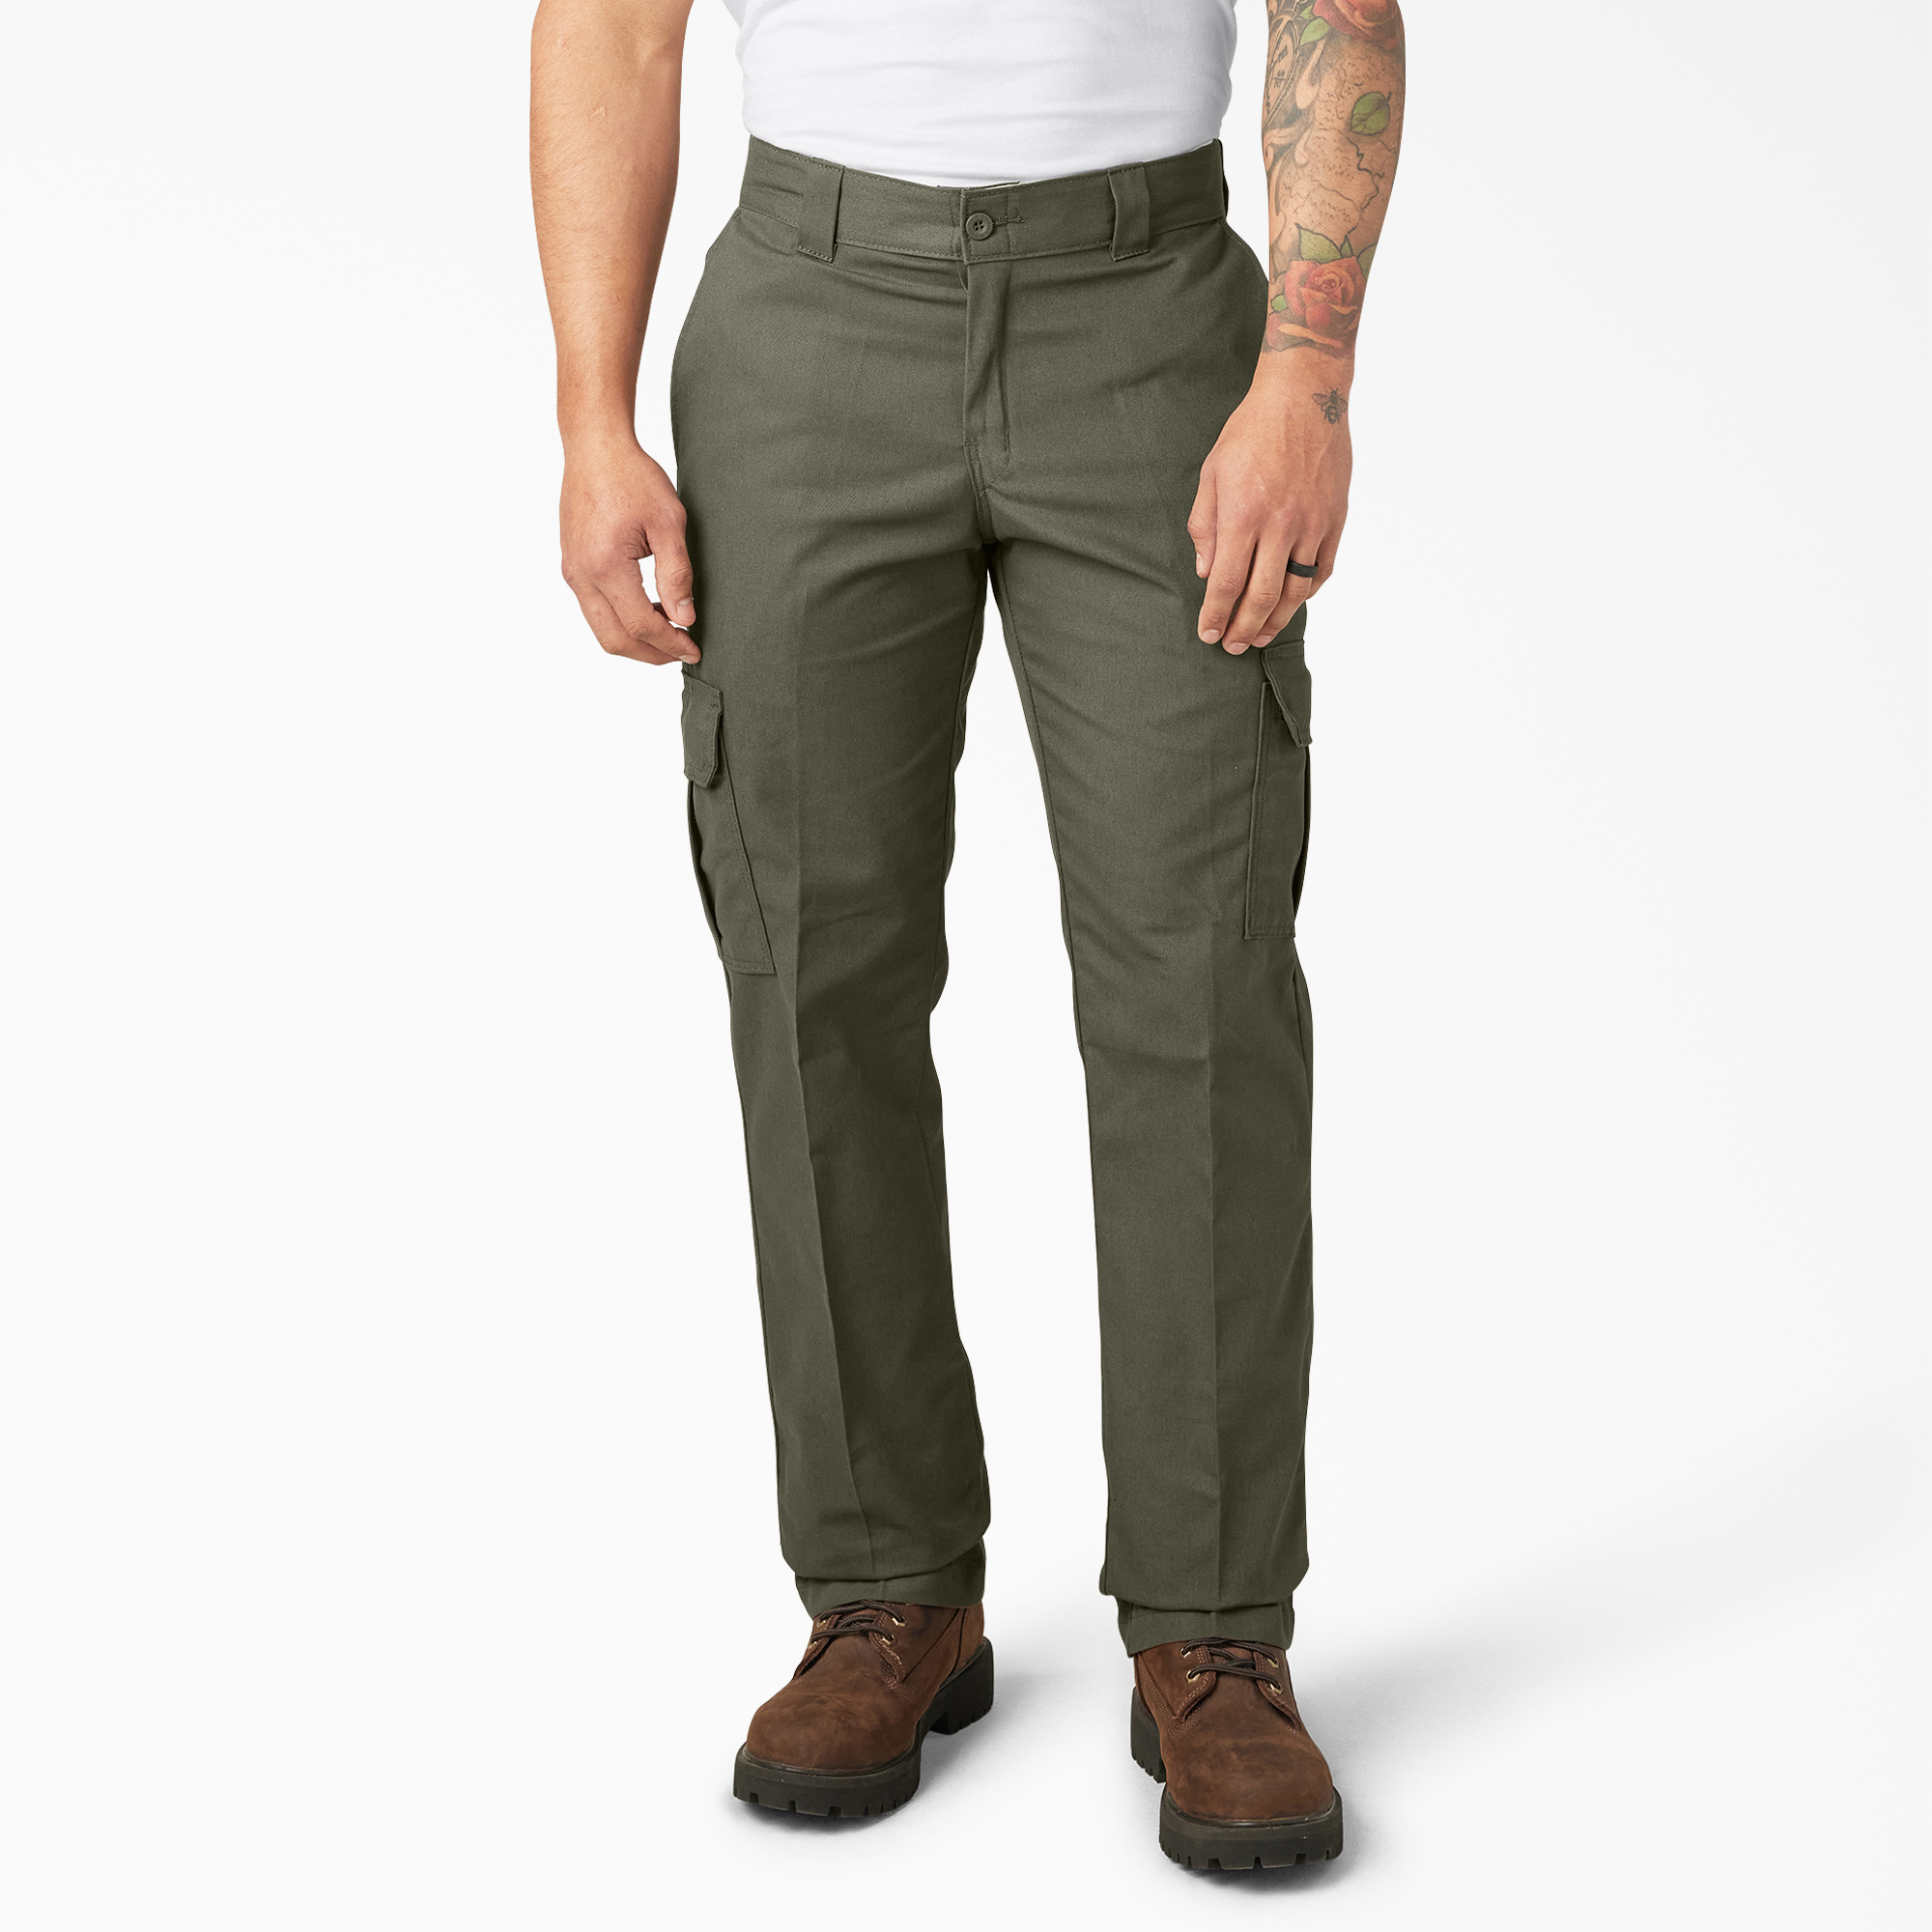 FLEX Regular Fit Straight Leg Cargo Pants - Moss Green (MS)